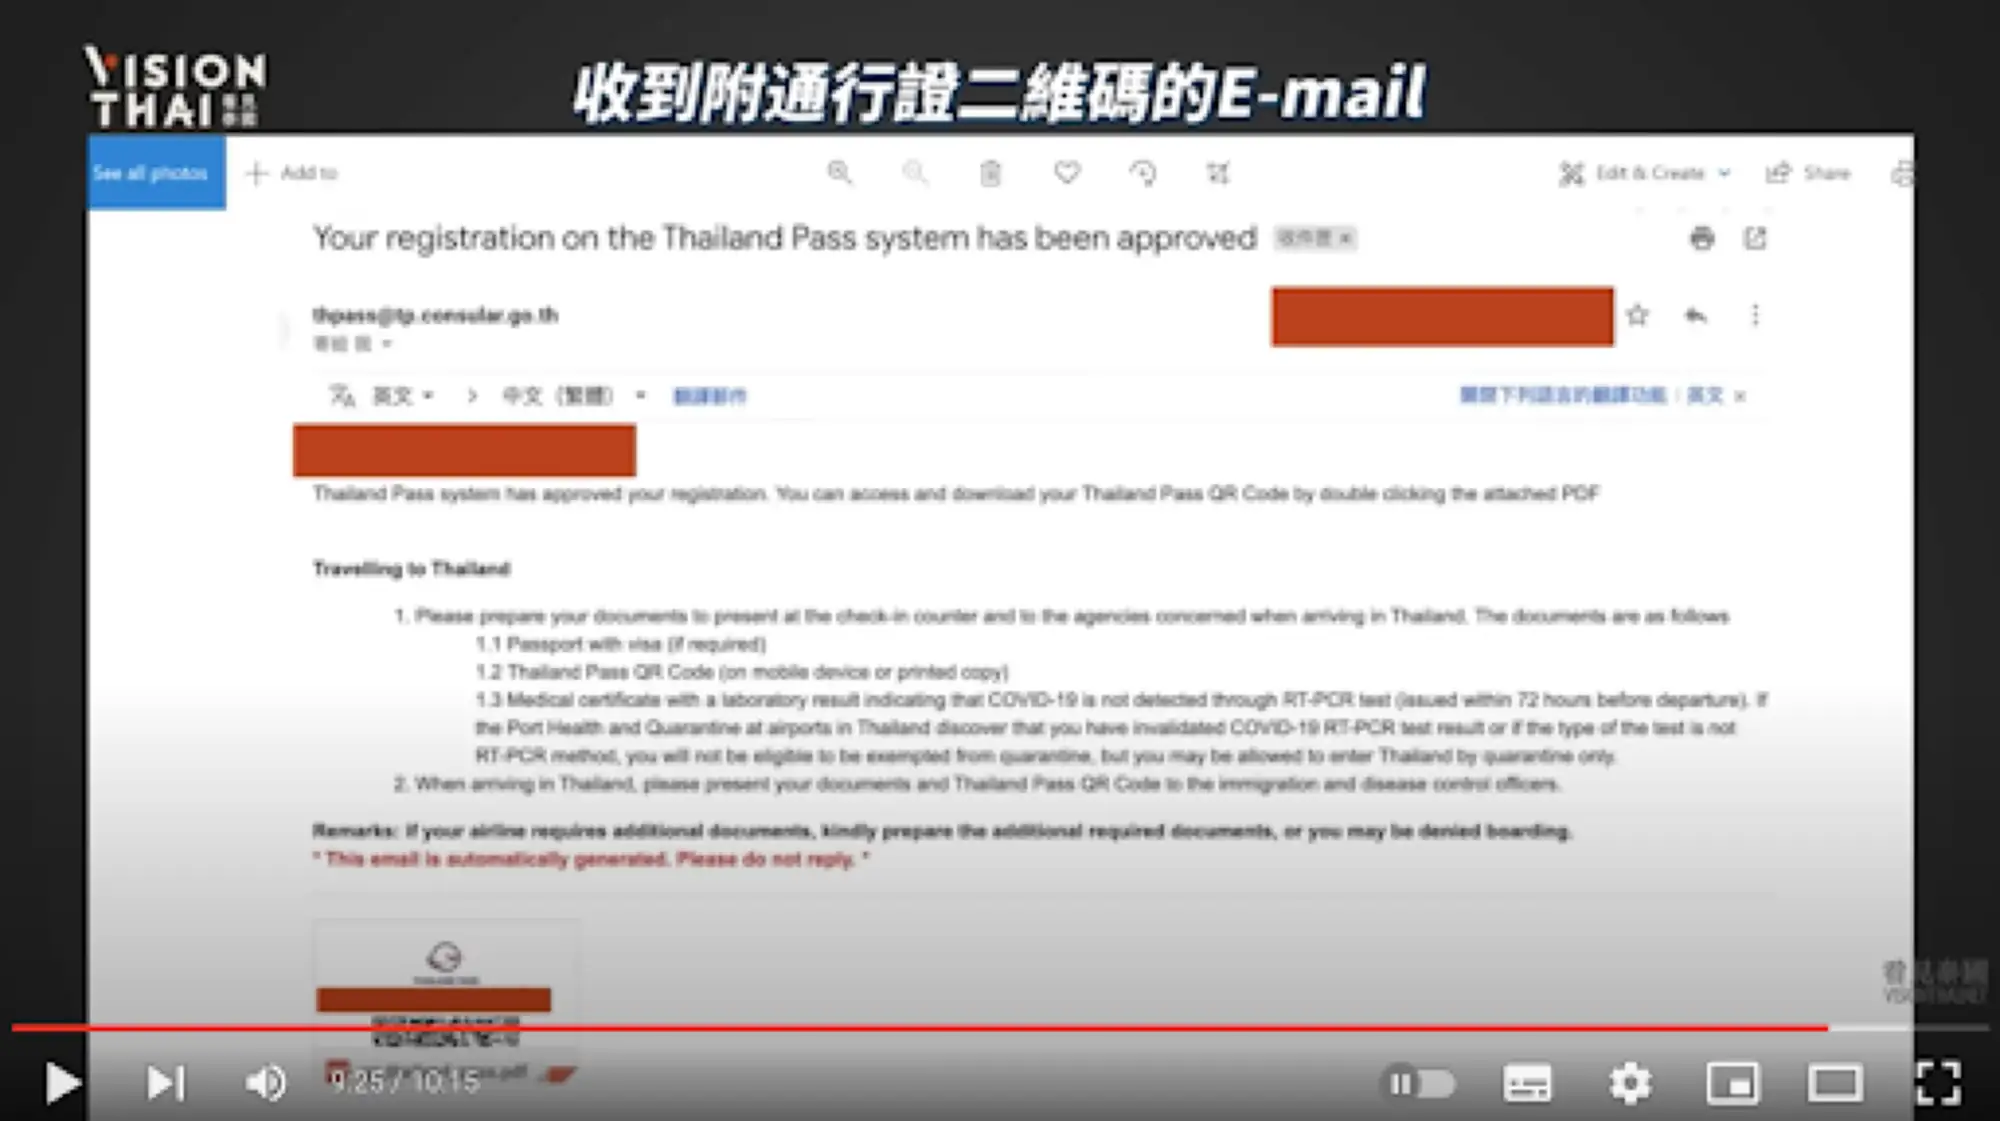 申請結果通過後，可以查收到通過結果和泰國通行證的二維碼